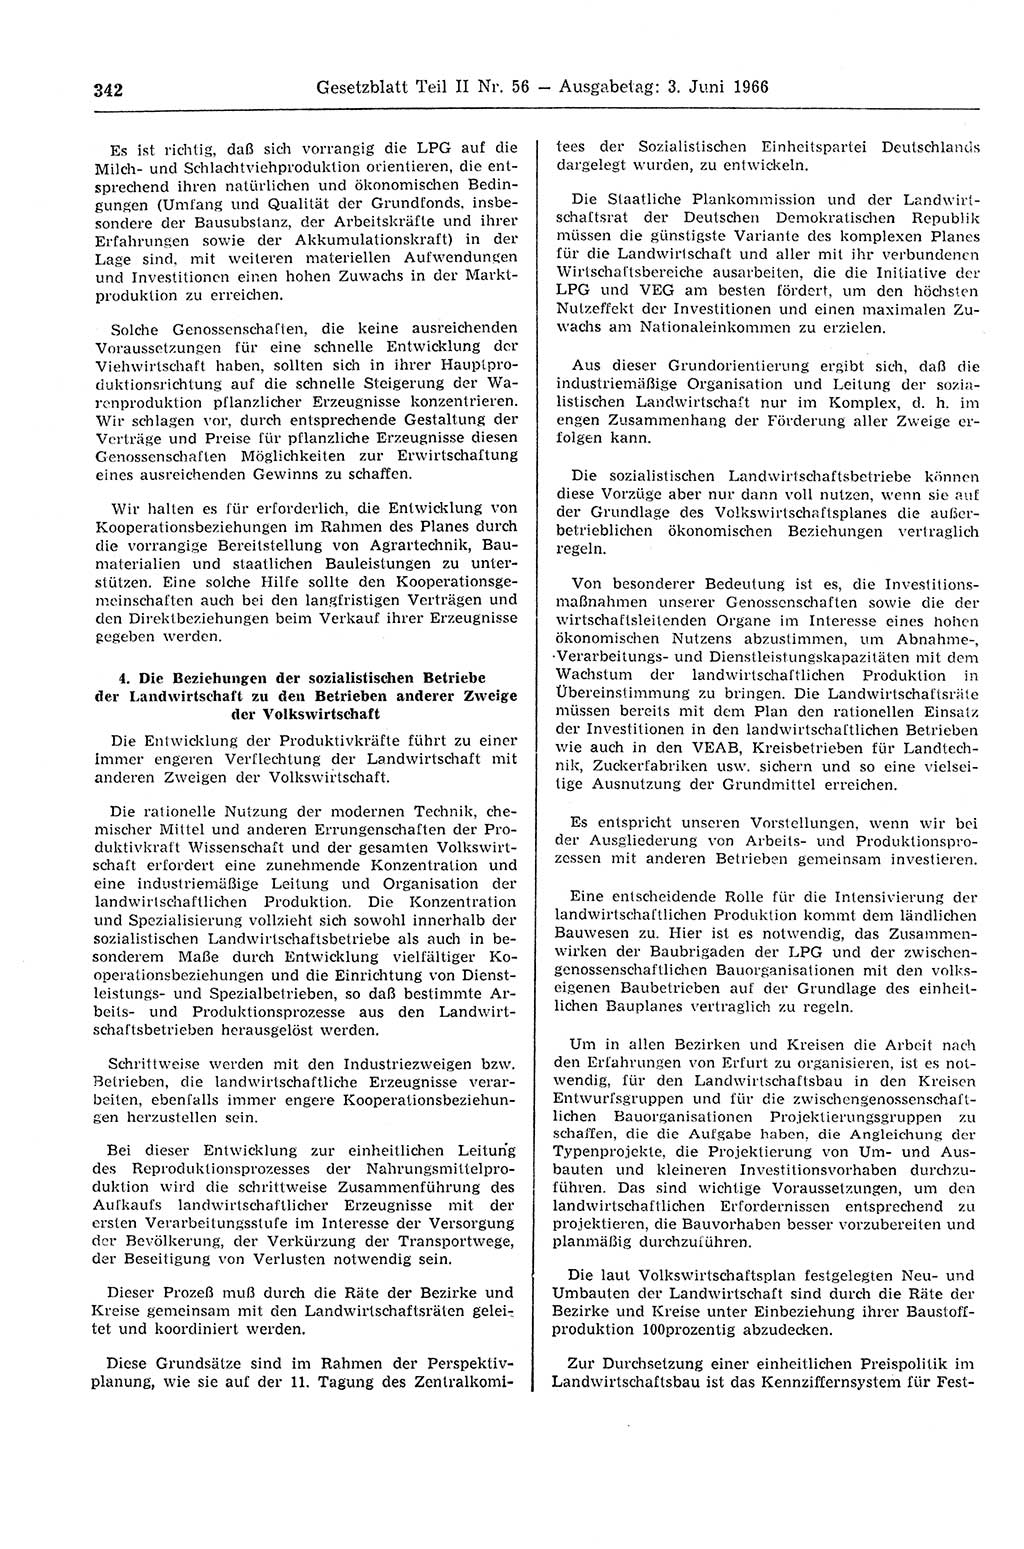 Gesetzblatt (GBl.) der Deutschen Demokratischen Republik (DDR) Teil ⅠⅠ 1966, Seite 342 (GBl. DDR ⅠⅠ 1966, S. 342)